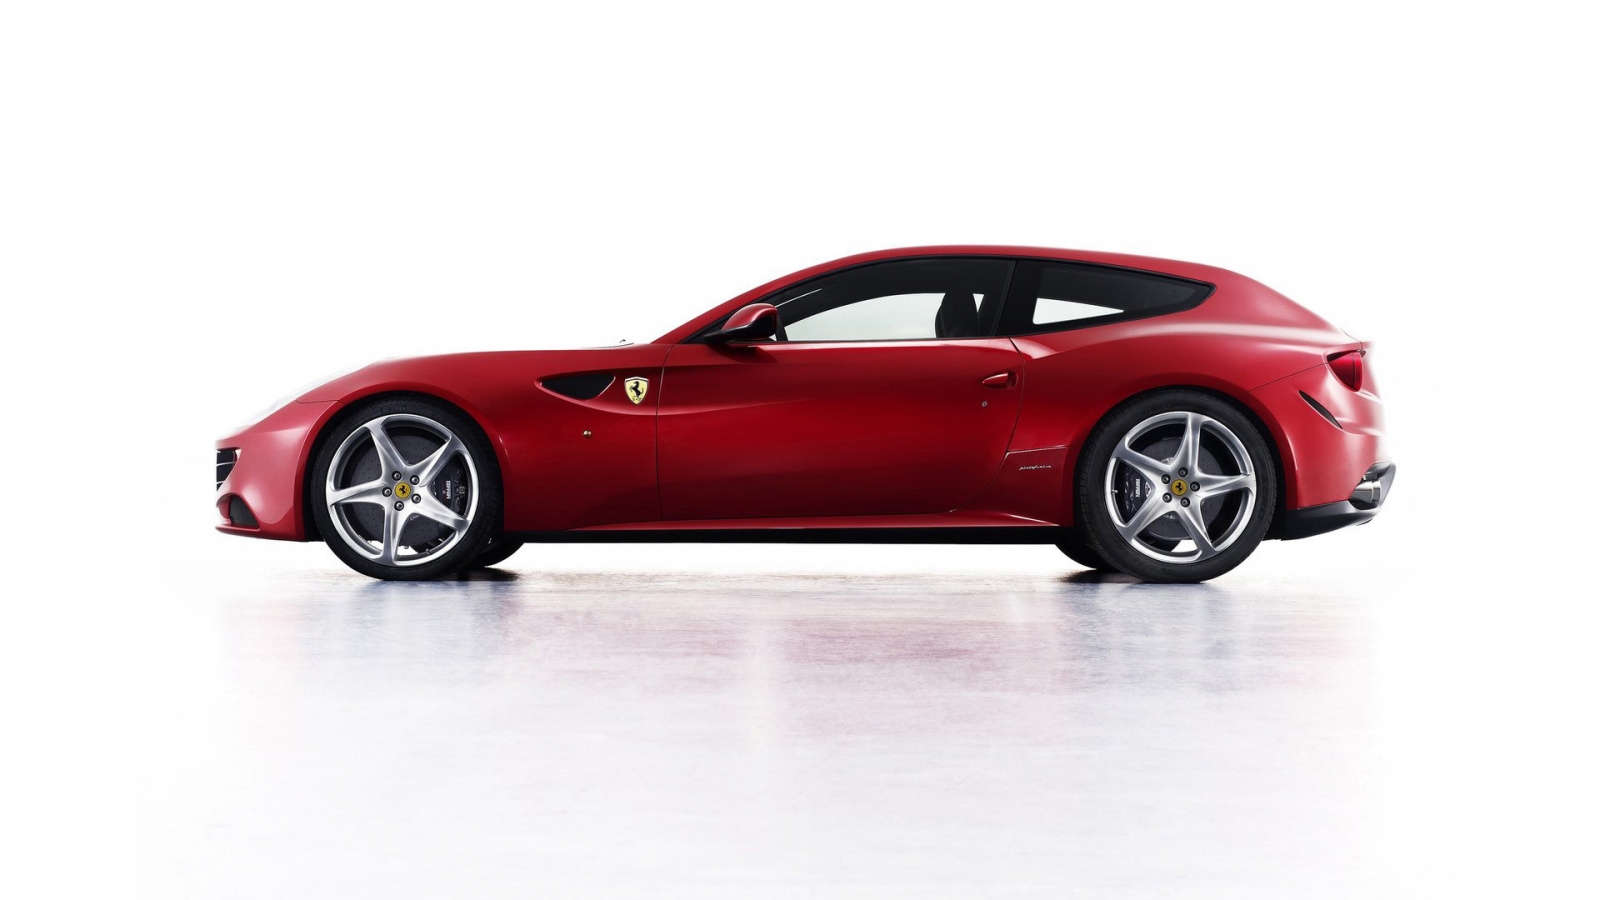 Ferrari FF 2011 for 1600 x 900 HDTV resolution